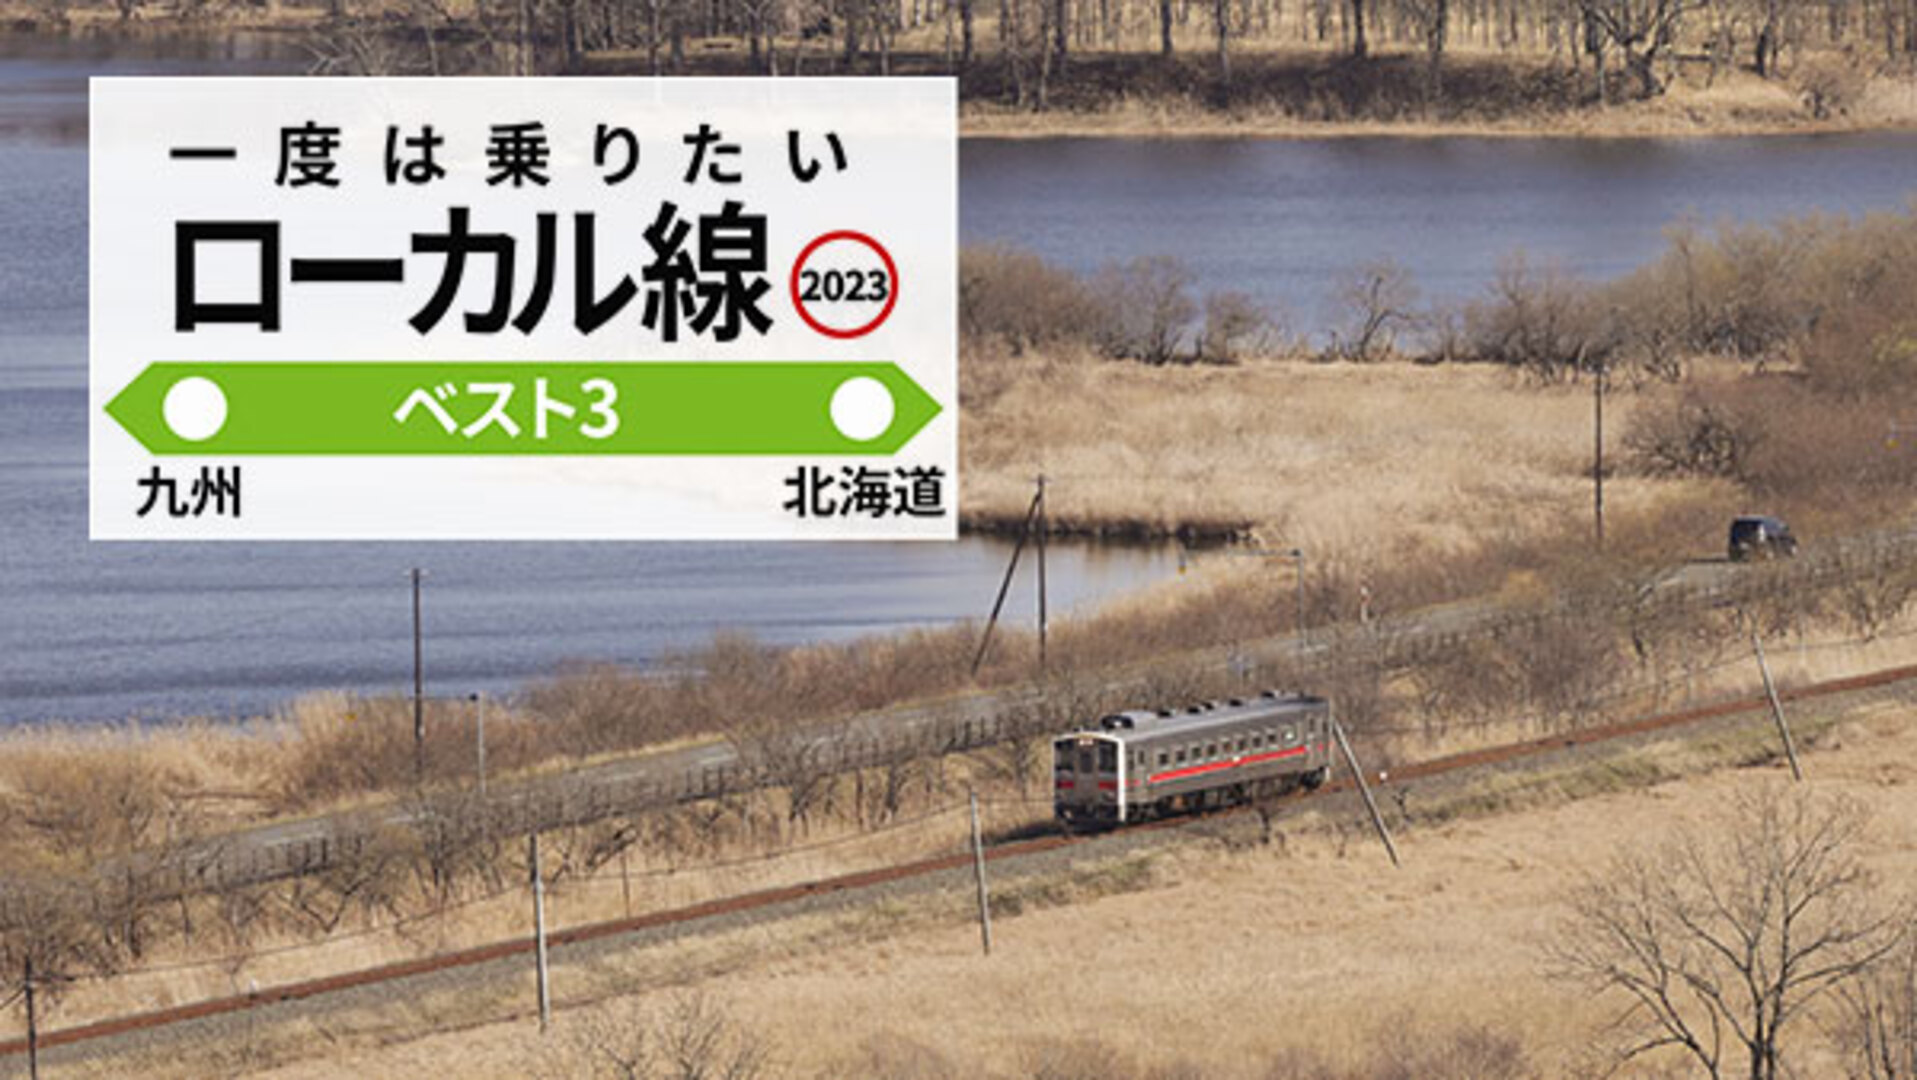 一度は乗りたいローカル線 湿原や清流の絶景、車窓から 何でもランキング - 日本経済新聞